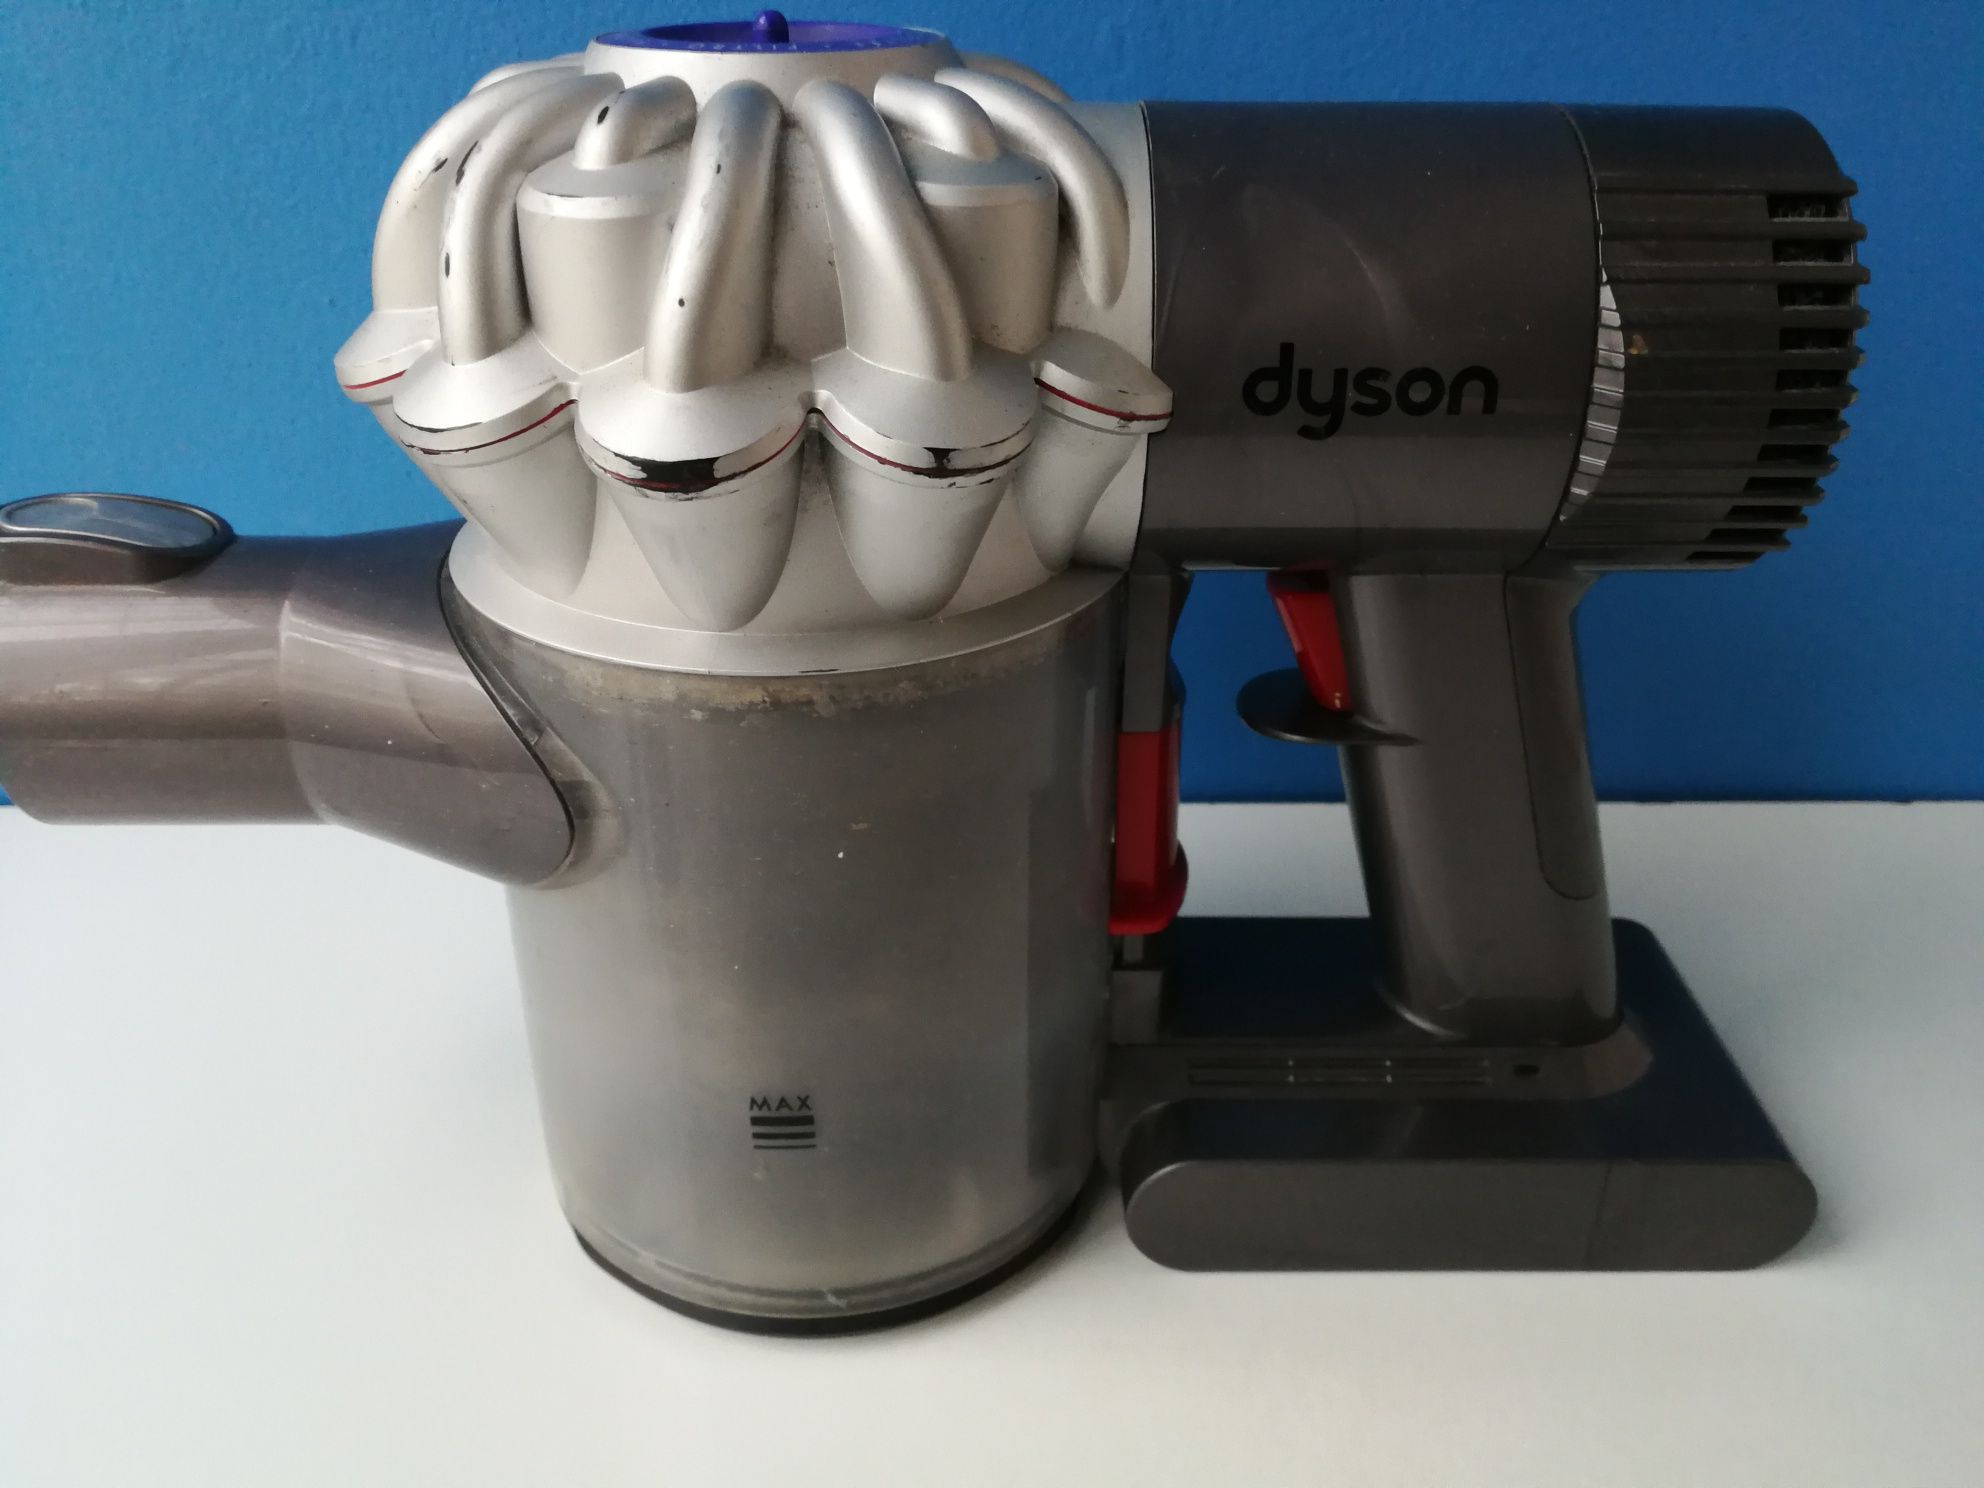 Aspirator Dyson DC62 (Dyson V6)